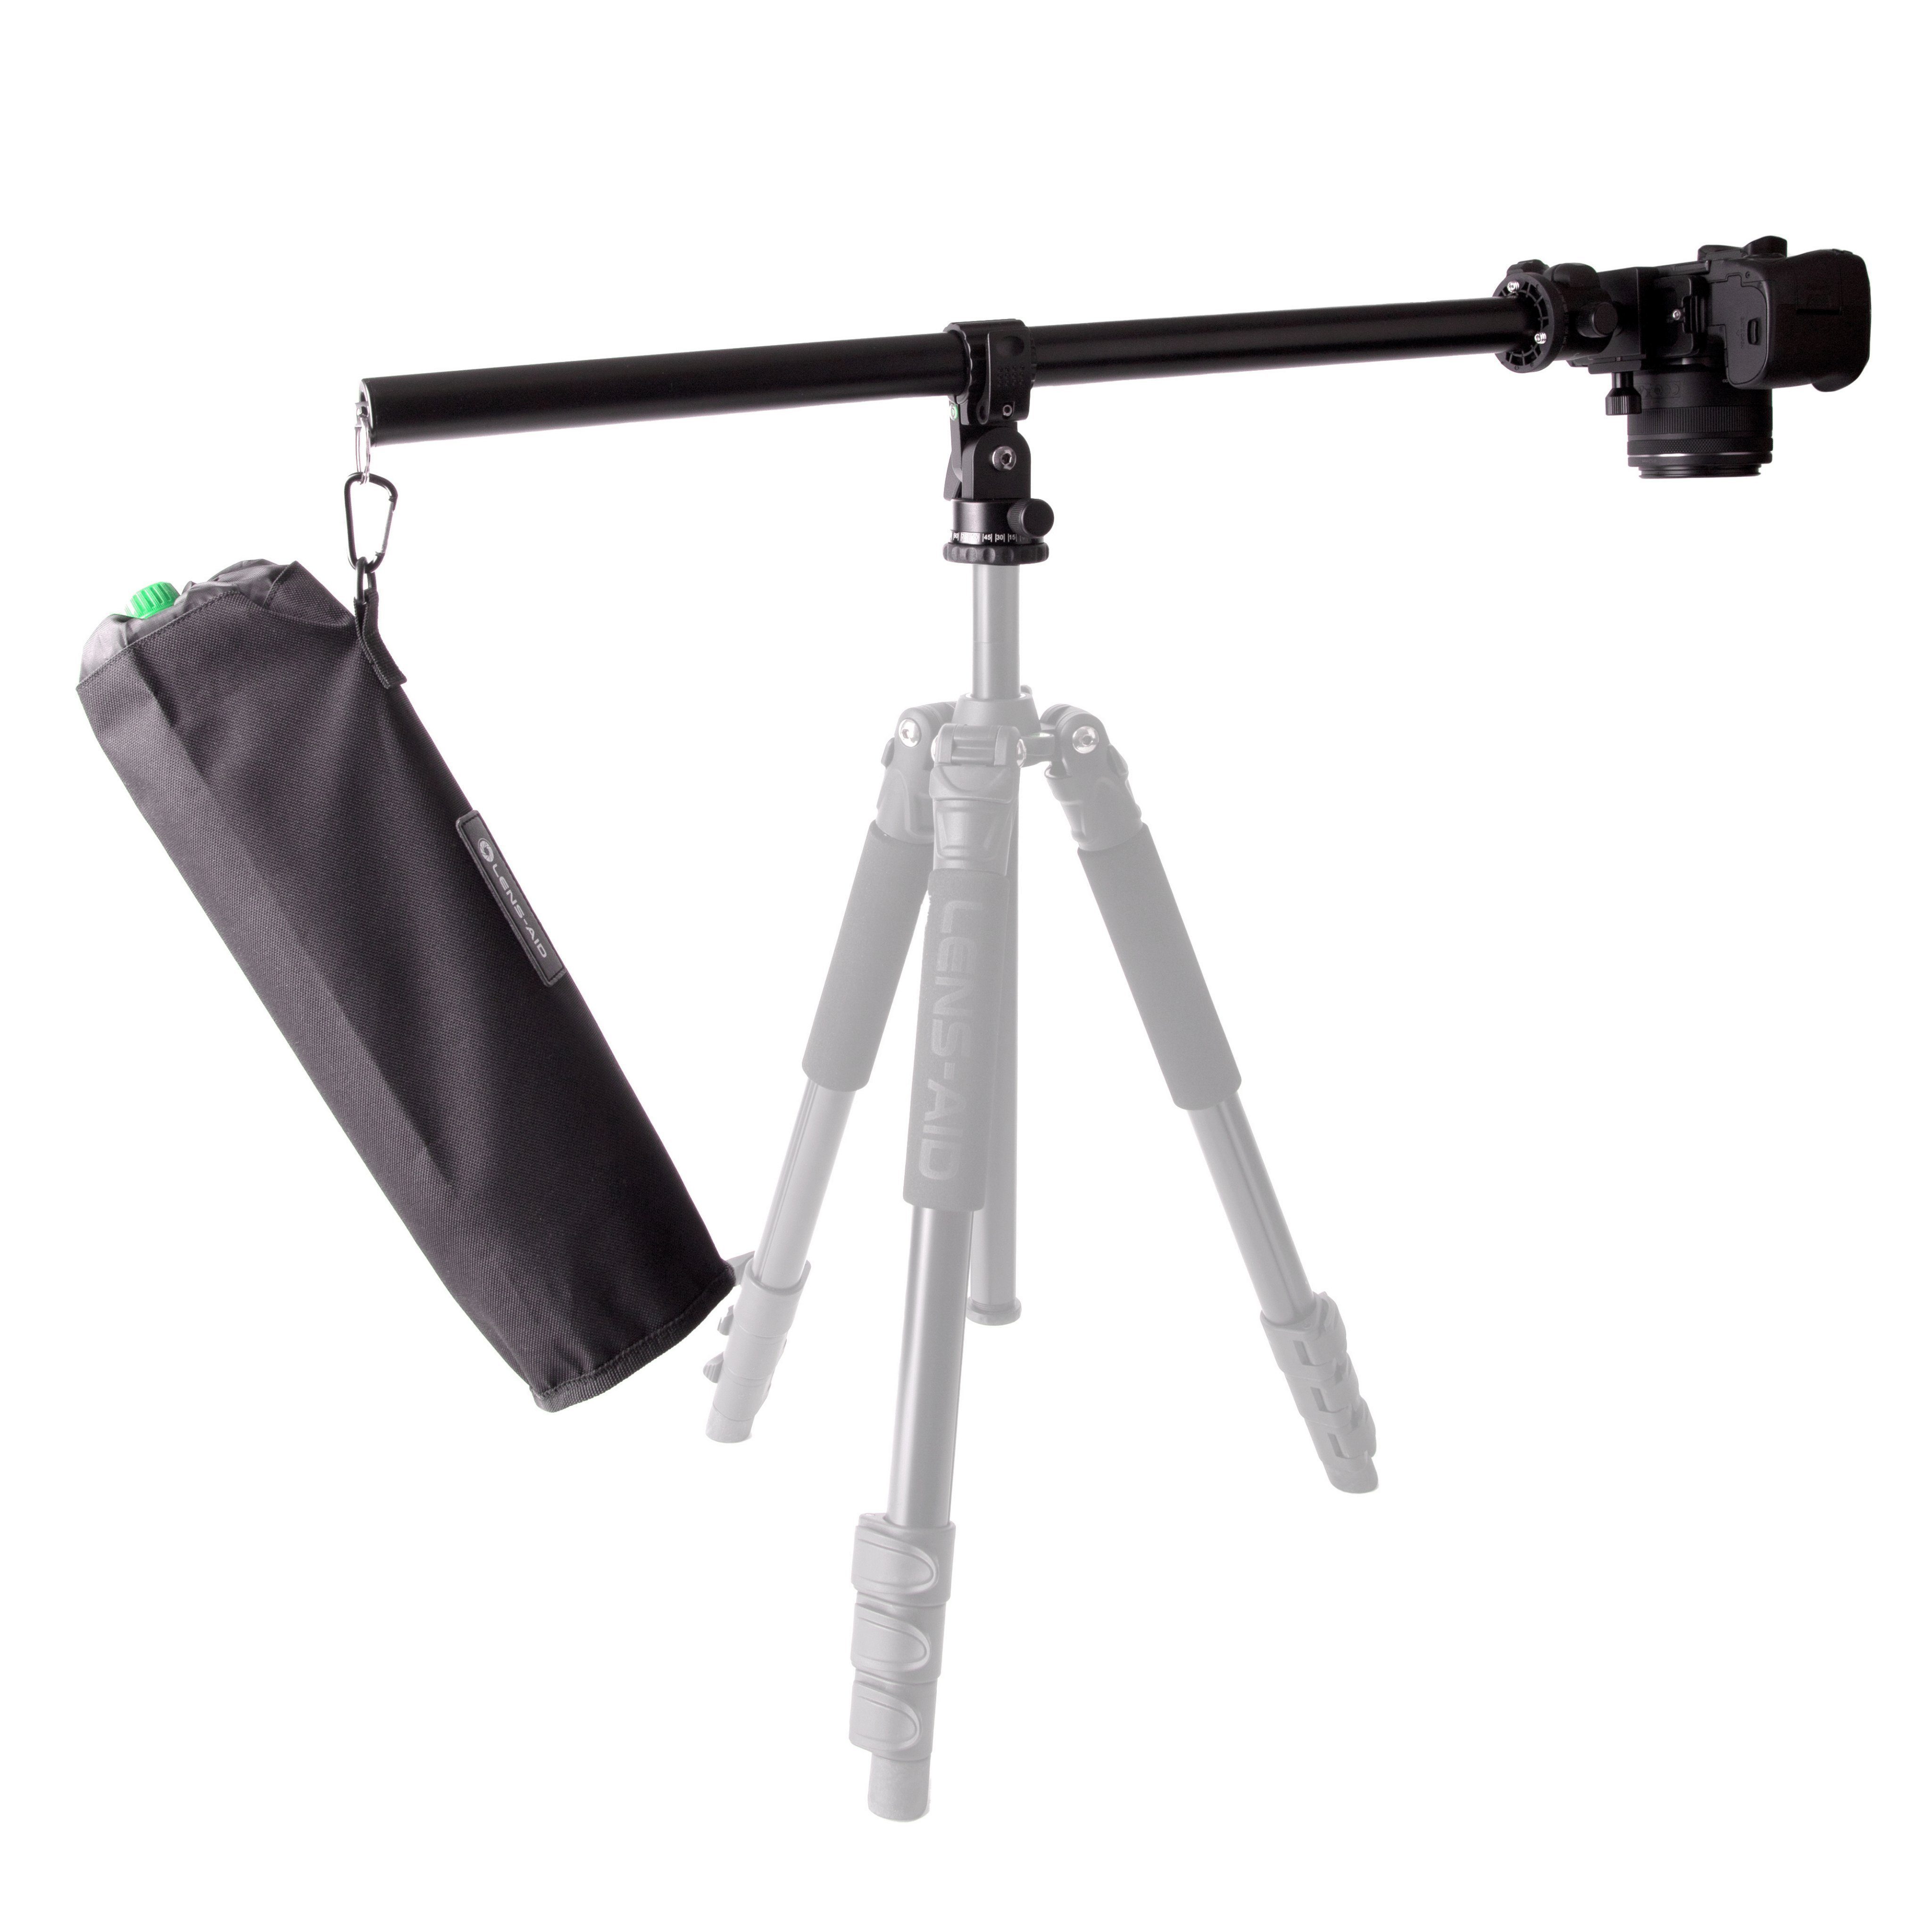 Super meistverkaufte Produkte Lens-Aid Auslegearm 58 cm für und Flatlay- Stativhalterung Makrofotografie